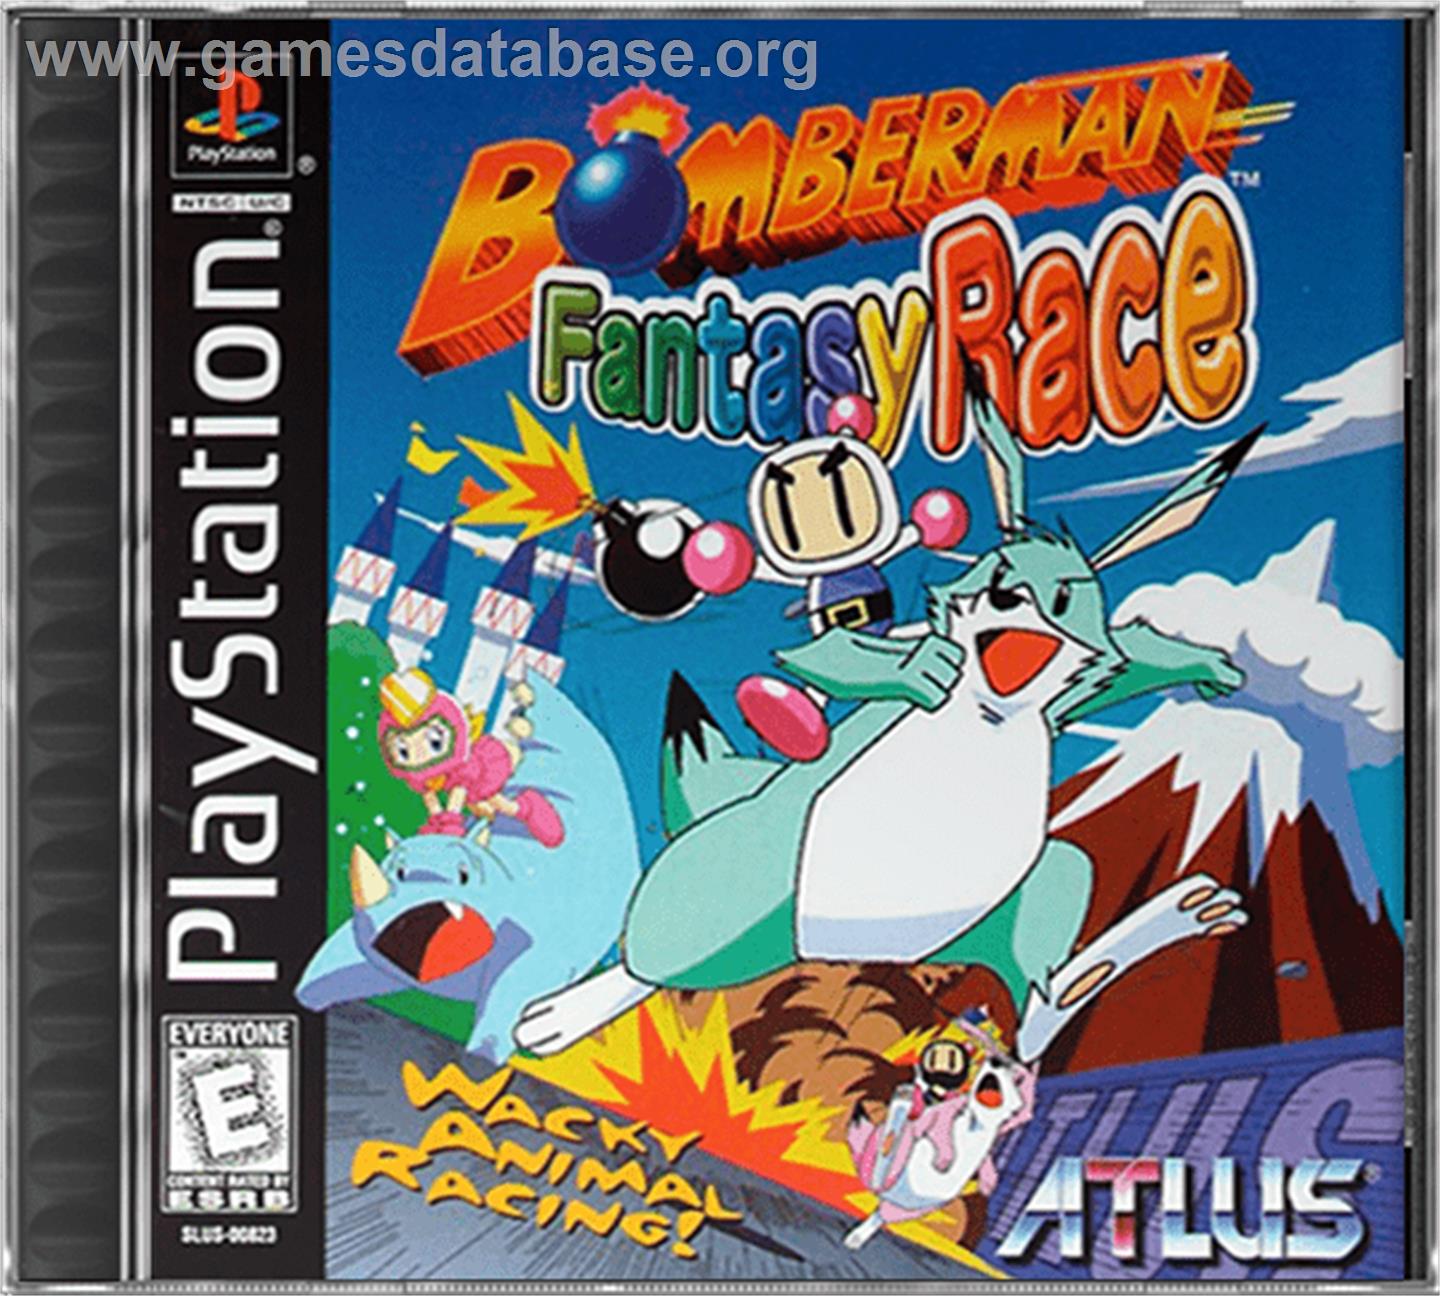 Bomberman Fantasy Race - Sony Playstation - Artwork - Box